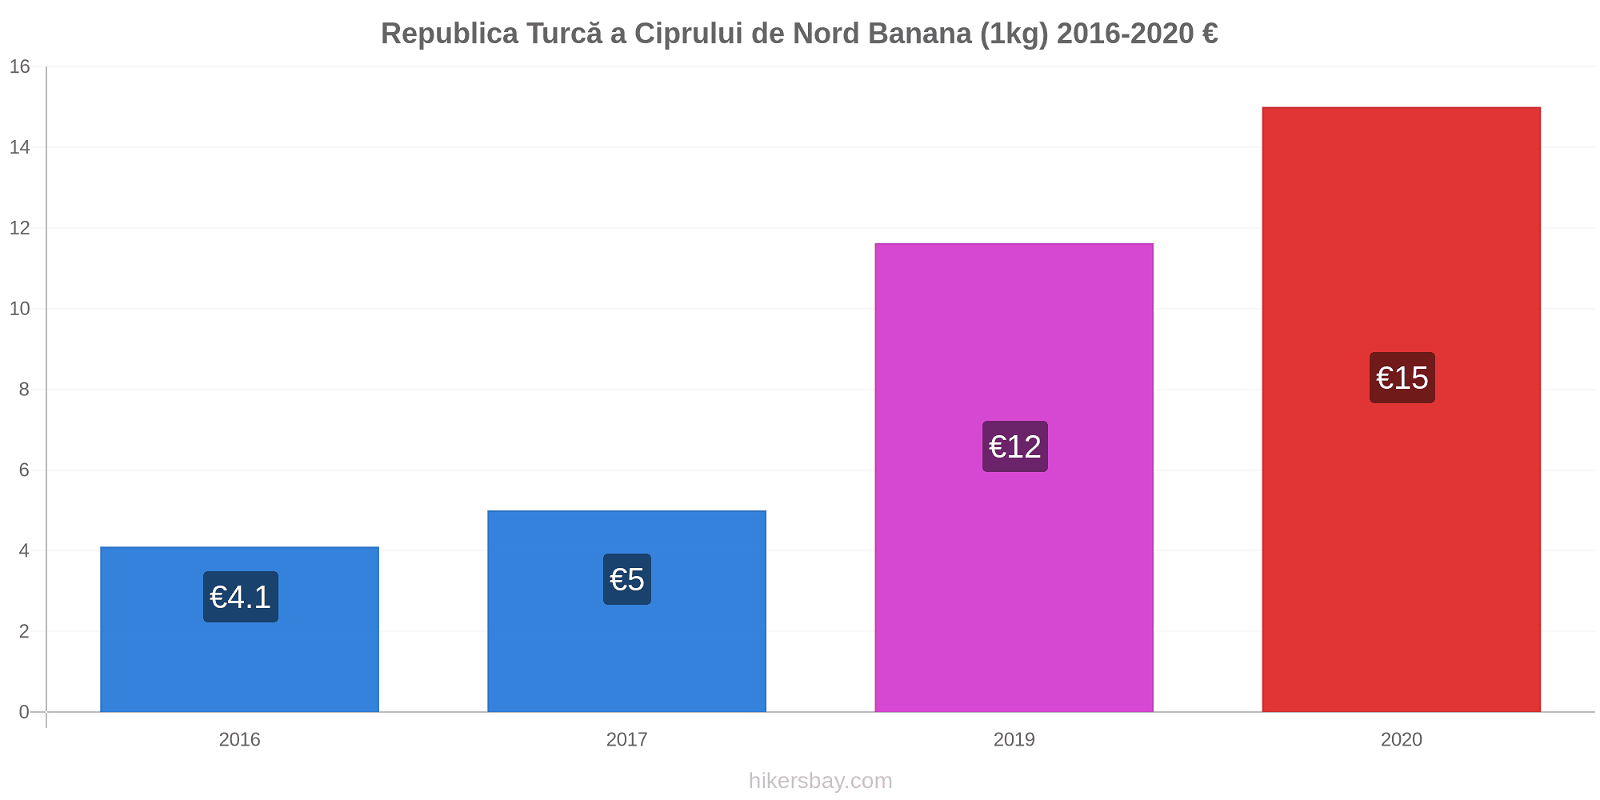 Republica Turcă a Ciprului de Nord modificări de preț Banana (1kg) hikersbay.com